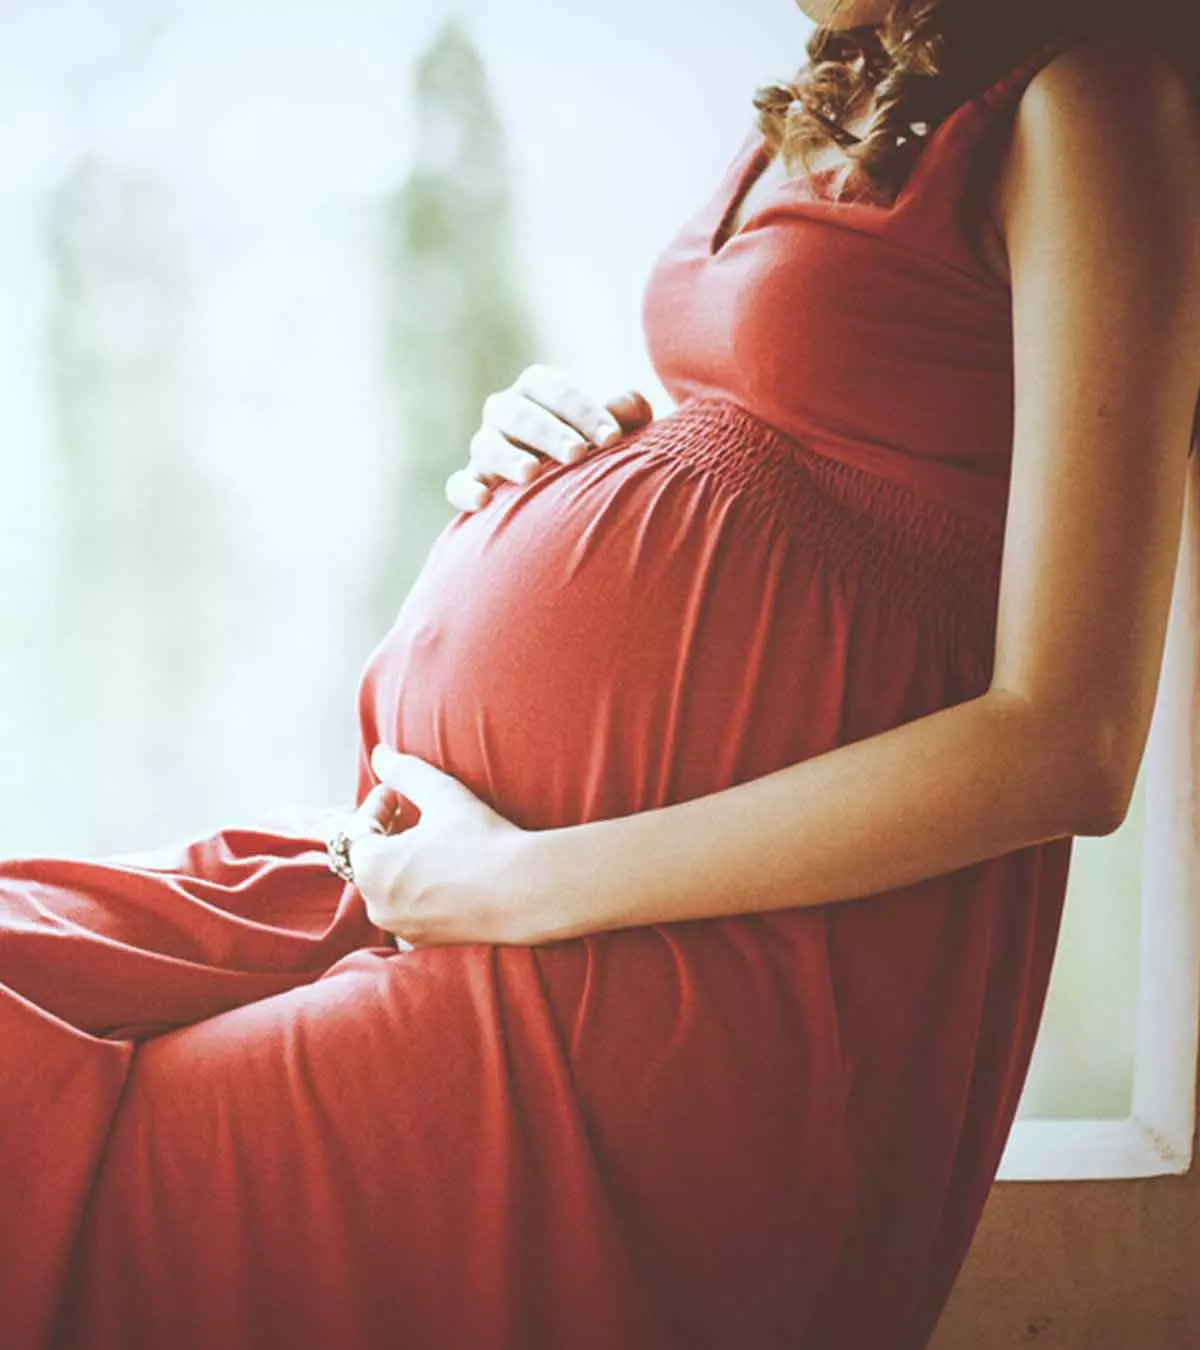 प्रेगनेंसी से जुड़े 12 मिथक, जो गर्भवती को पता होने चाहिए